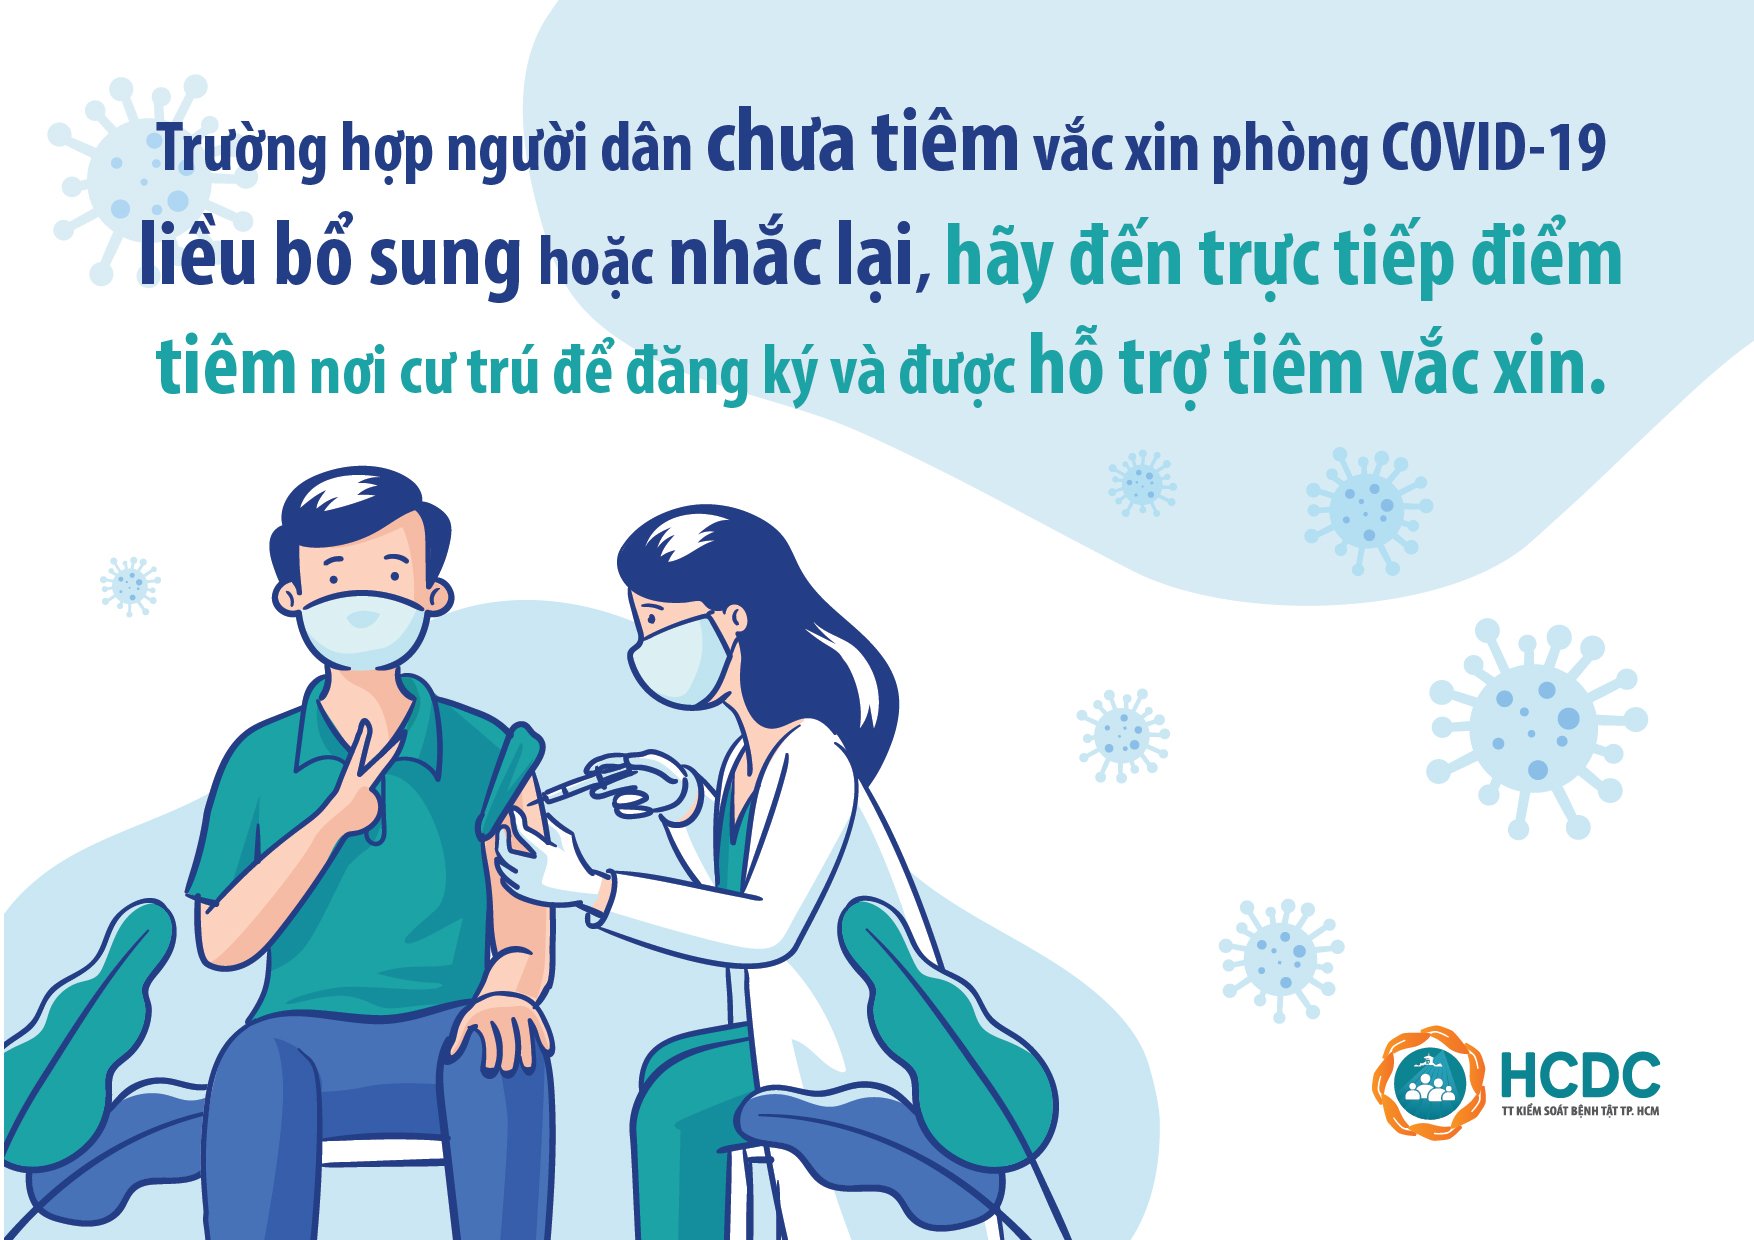 TP.HCM: Người dân chưa tiêm vắc xin phòng COVID-19 mũi 3, hãy đến trực tiếp điểm tiêm đăng ký!